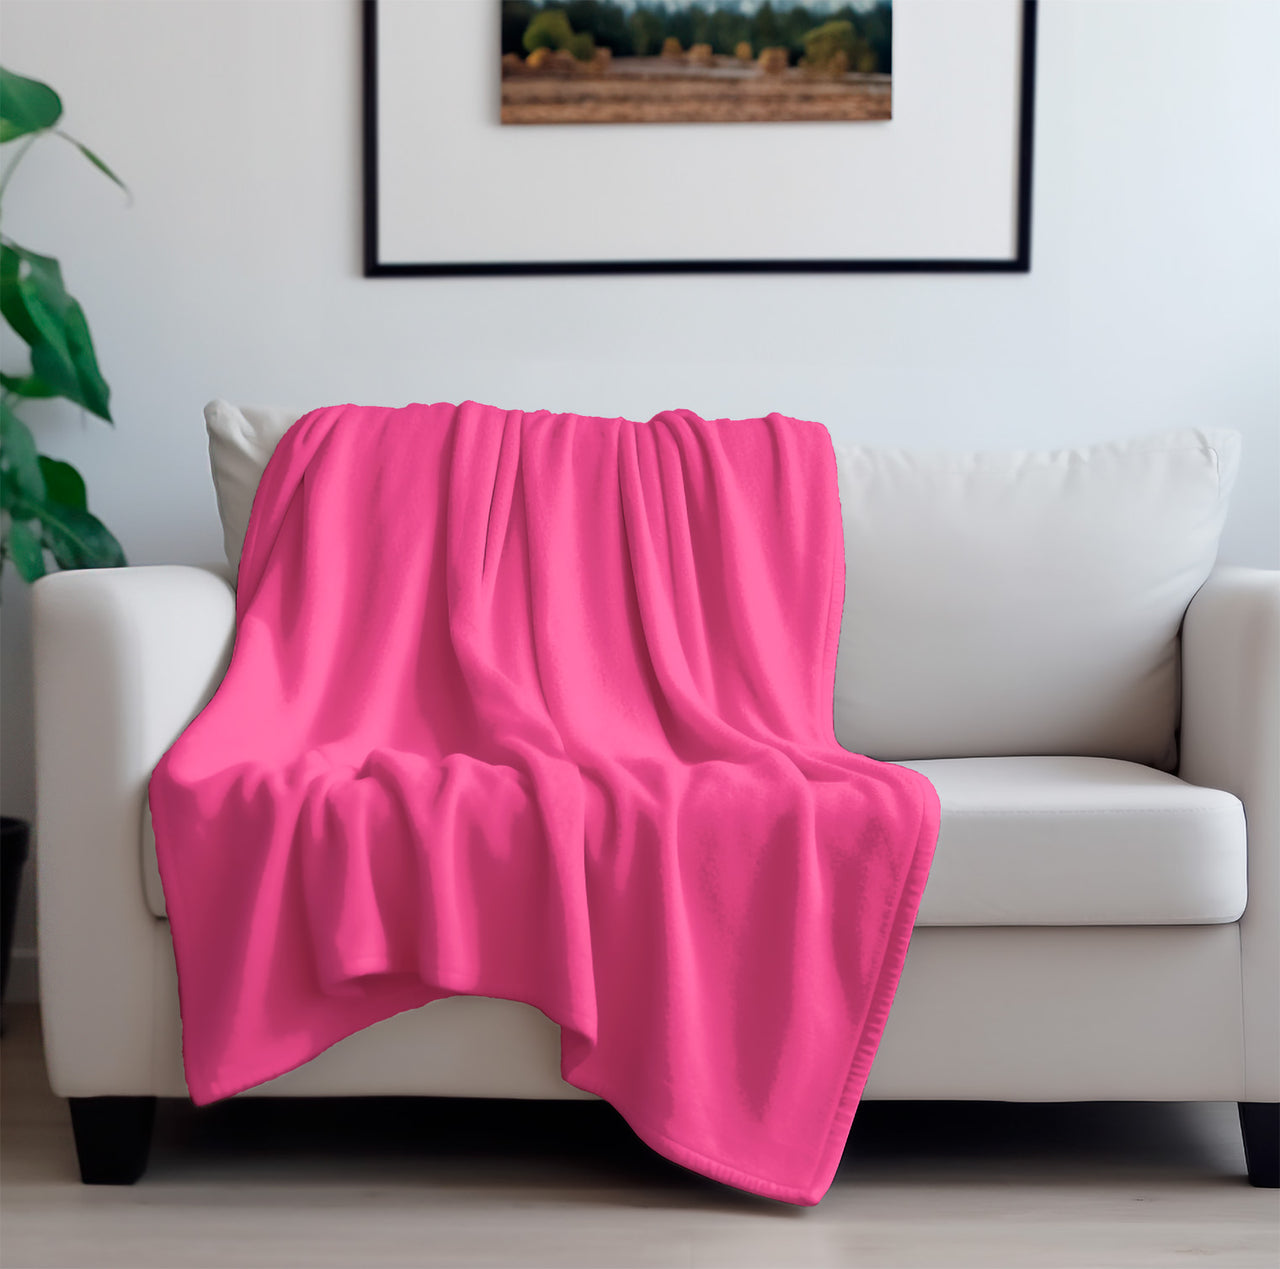 Peach Skin Blankets per unit - -Home Textiles – TRU